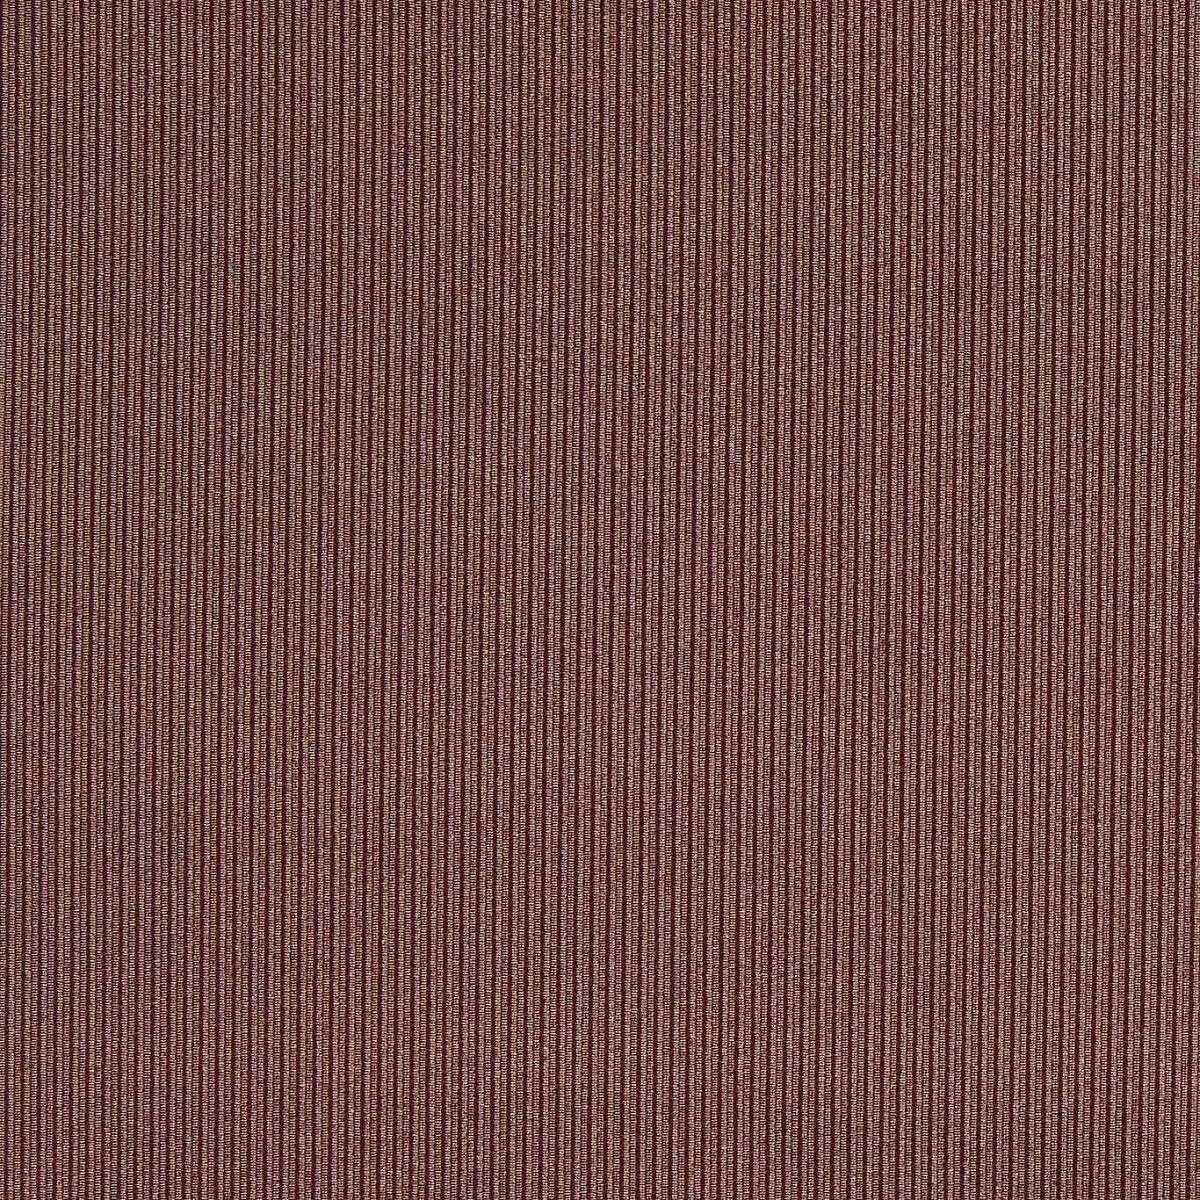 Ashdown Mulberry Fabric by Clarke & Clarke